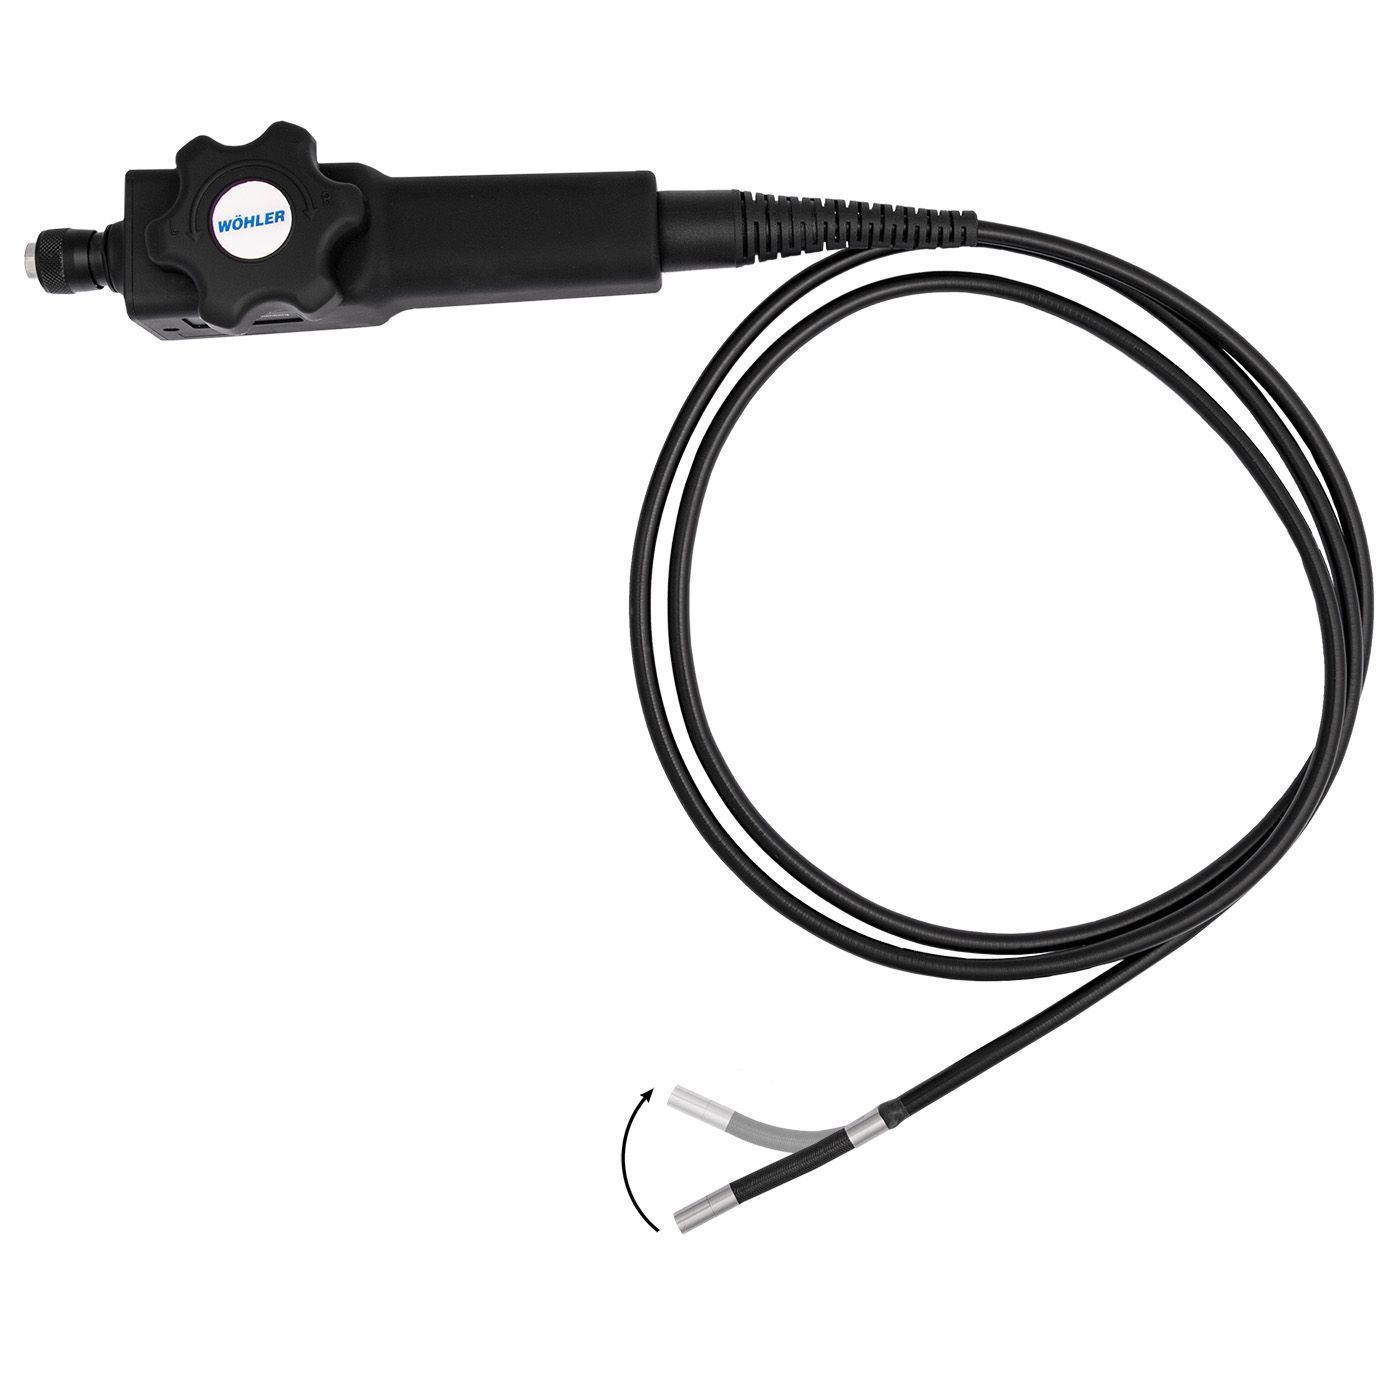 HD-Video-Endoskopsonde, schwenkbar - passend auf Wöhler VE 220, VE 320 und VE 400